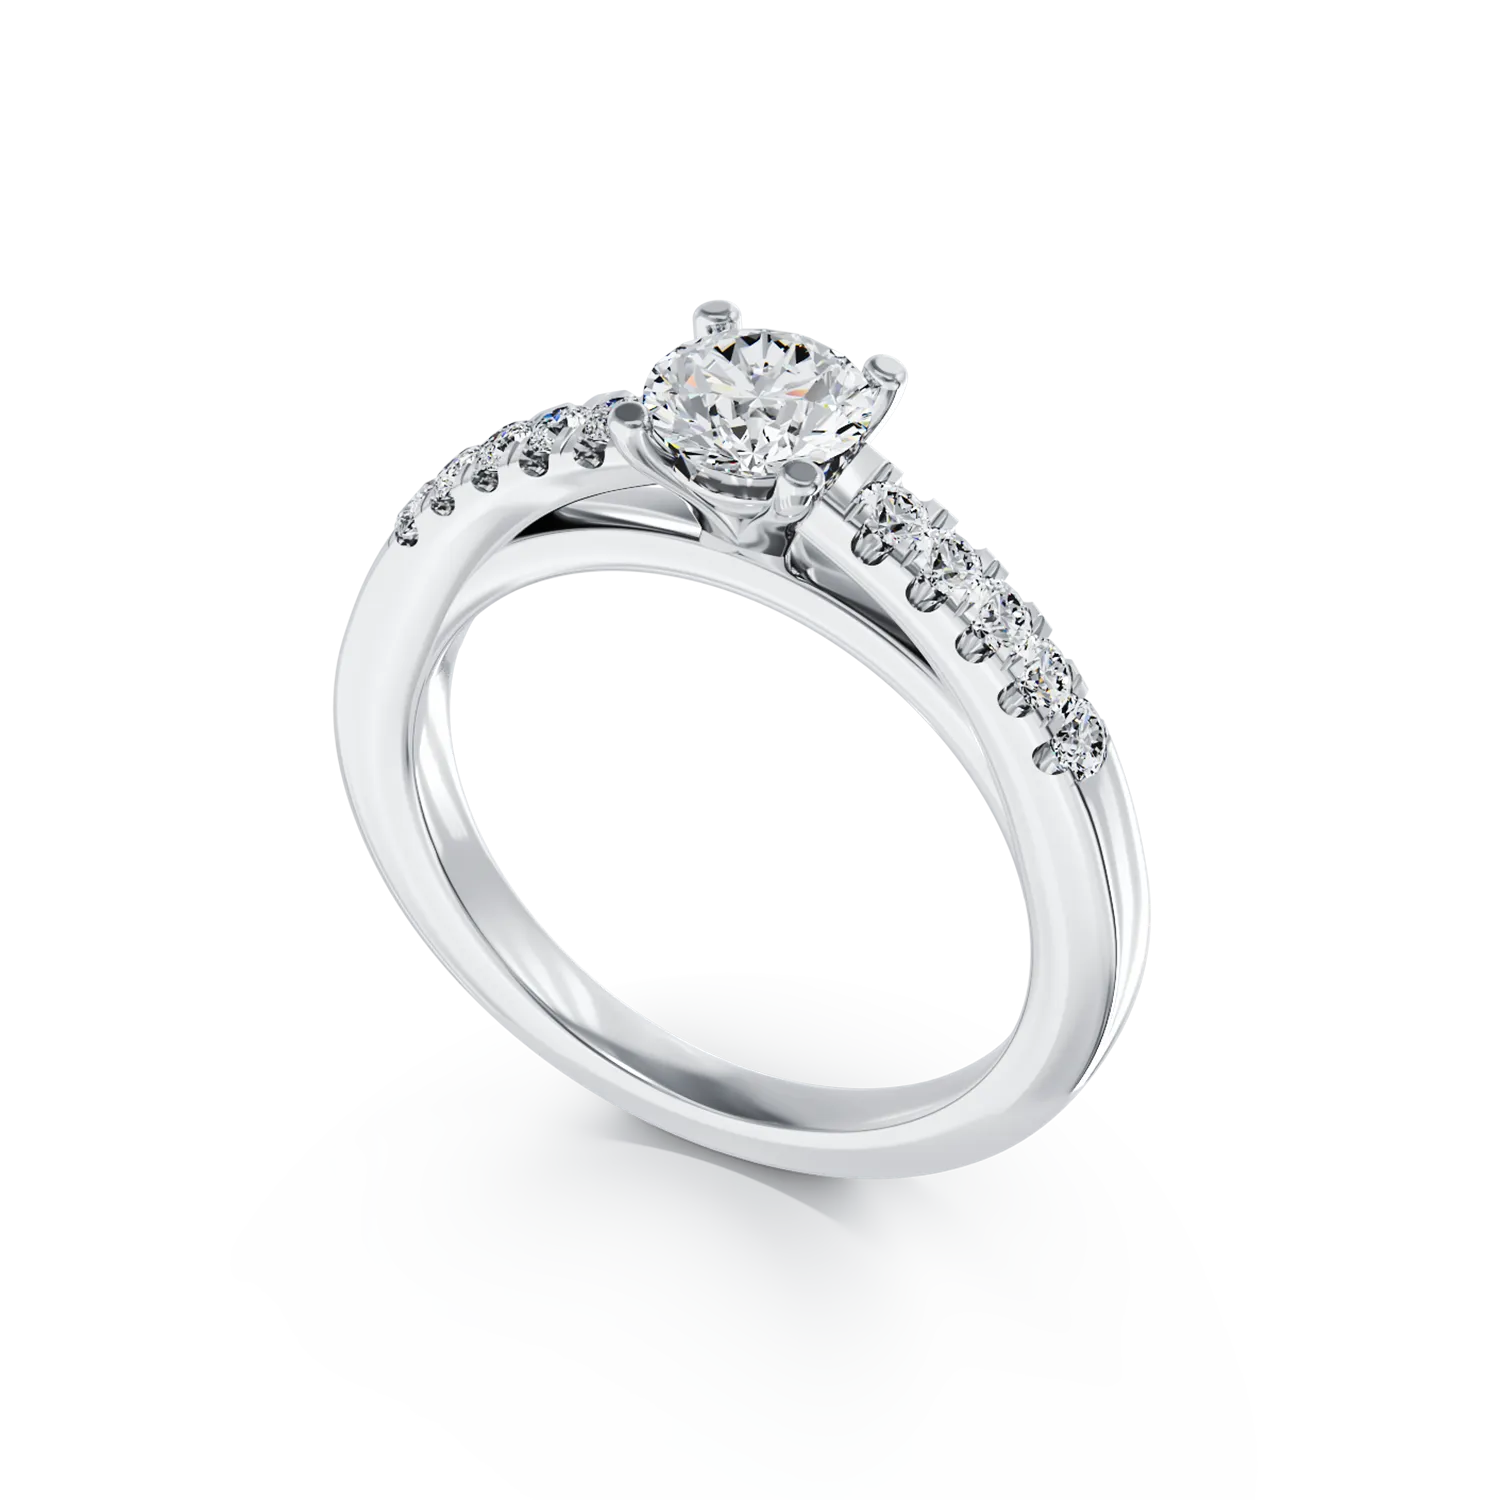 Годежен пръстен от 18К бяло злато с диамант 0.4ct и диамант 0.13ct